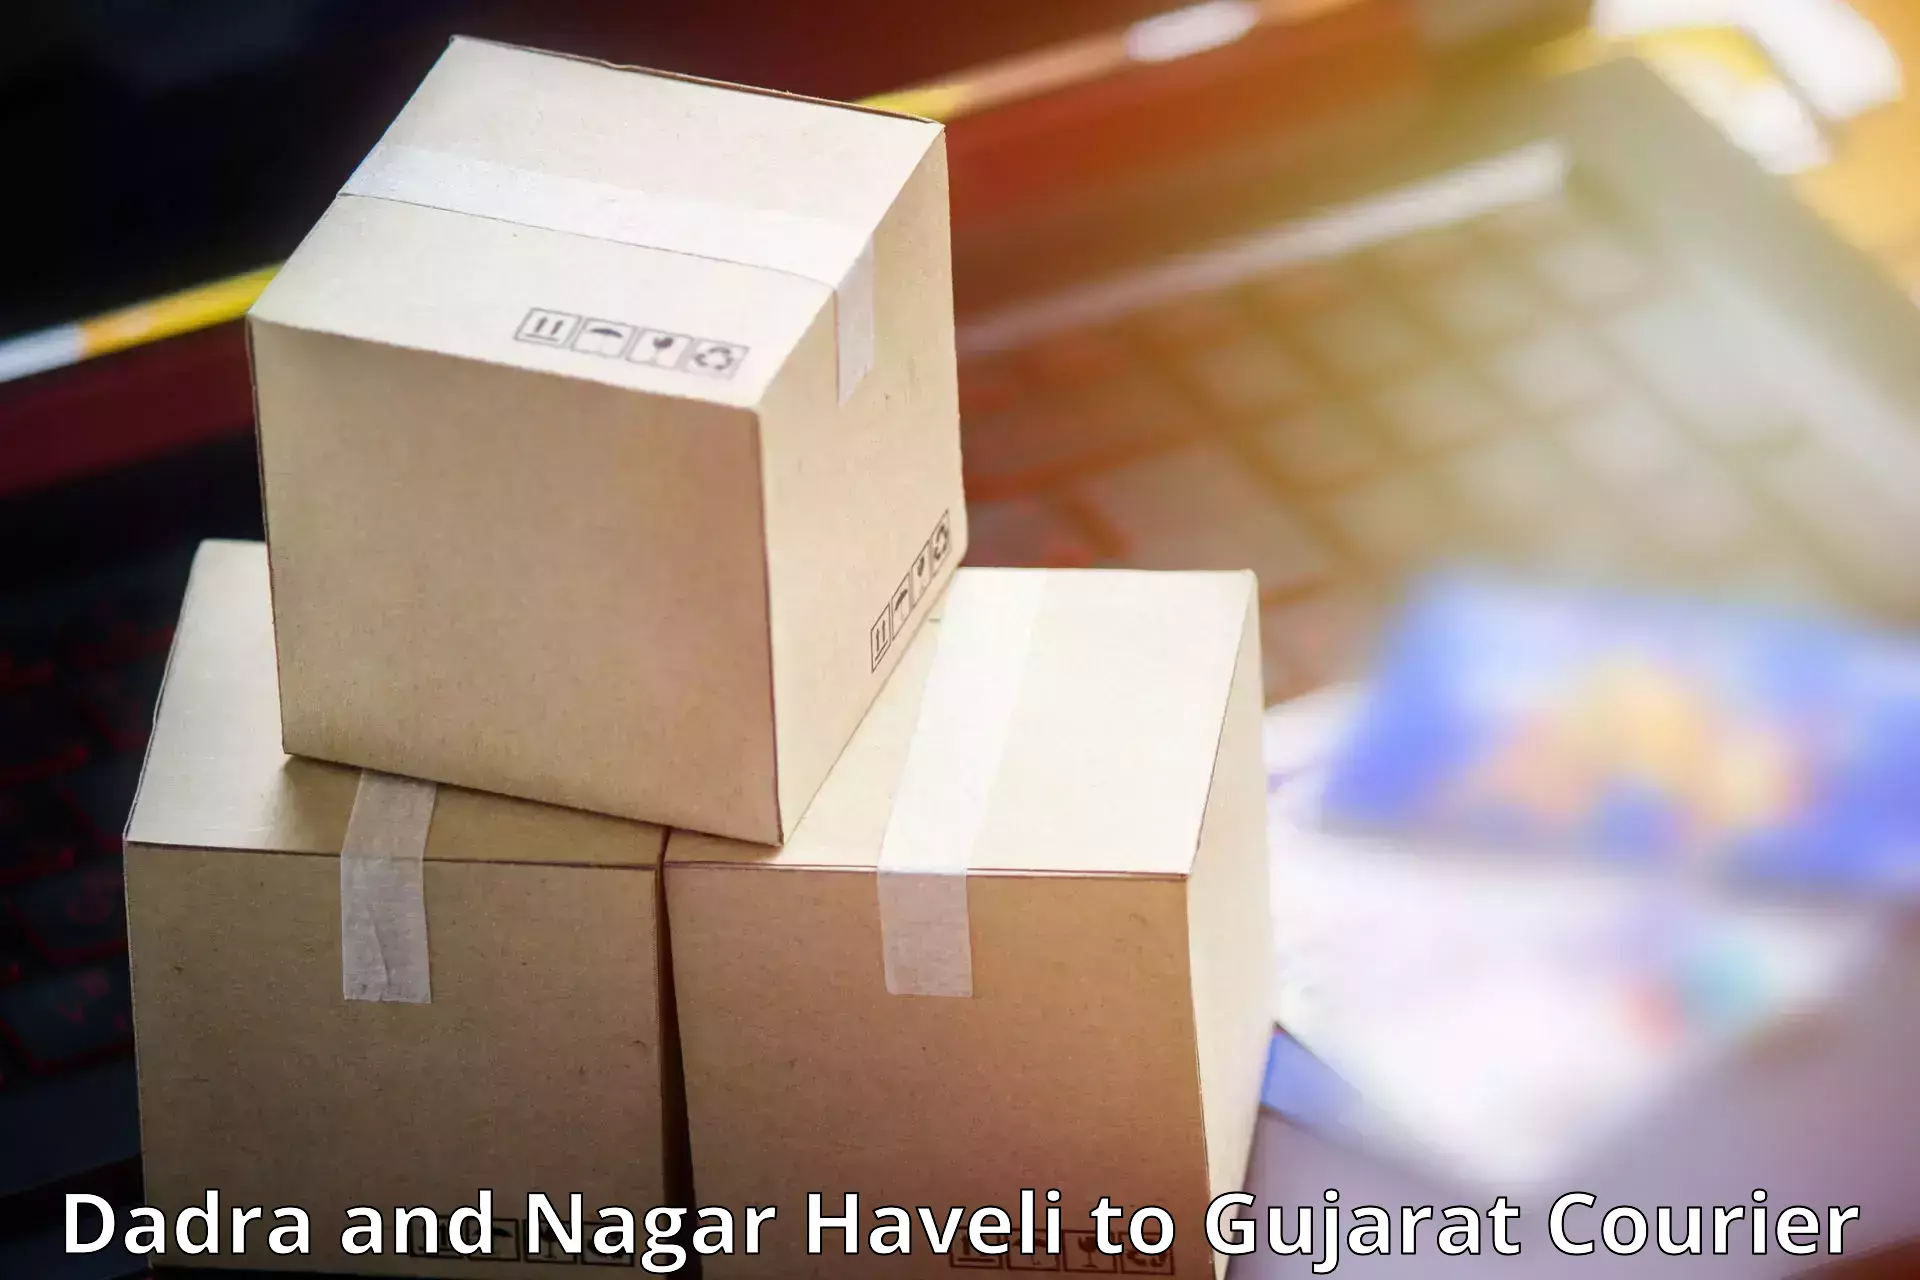 Reliable delivery network Dadra and Nagar Haveli to Kodinar